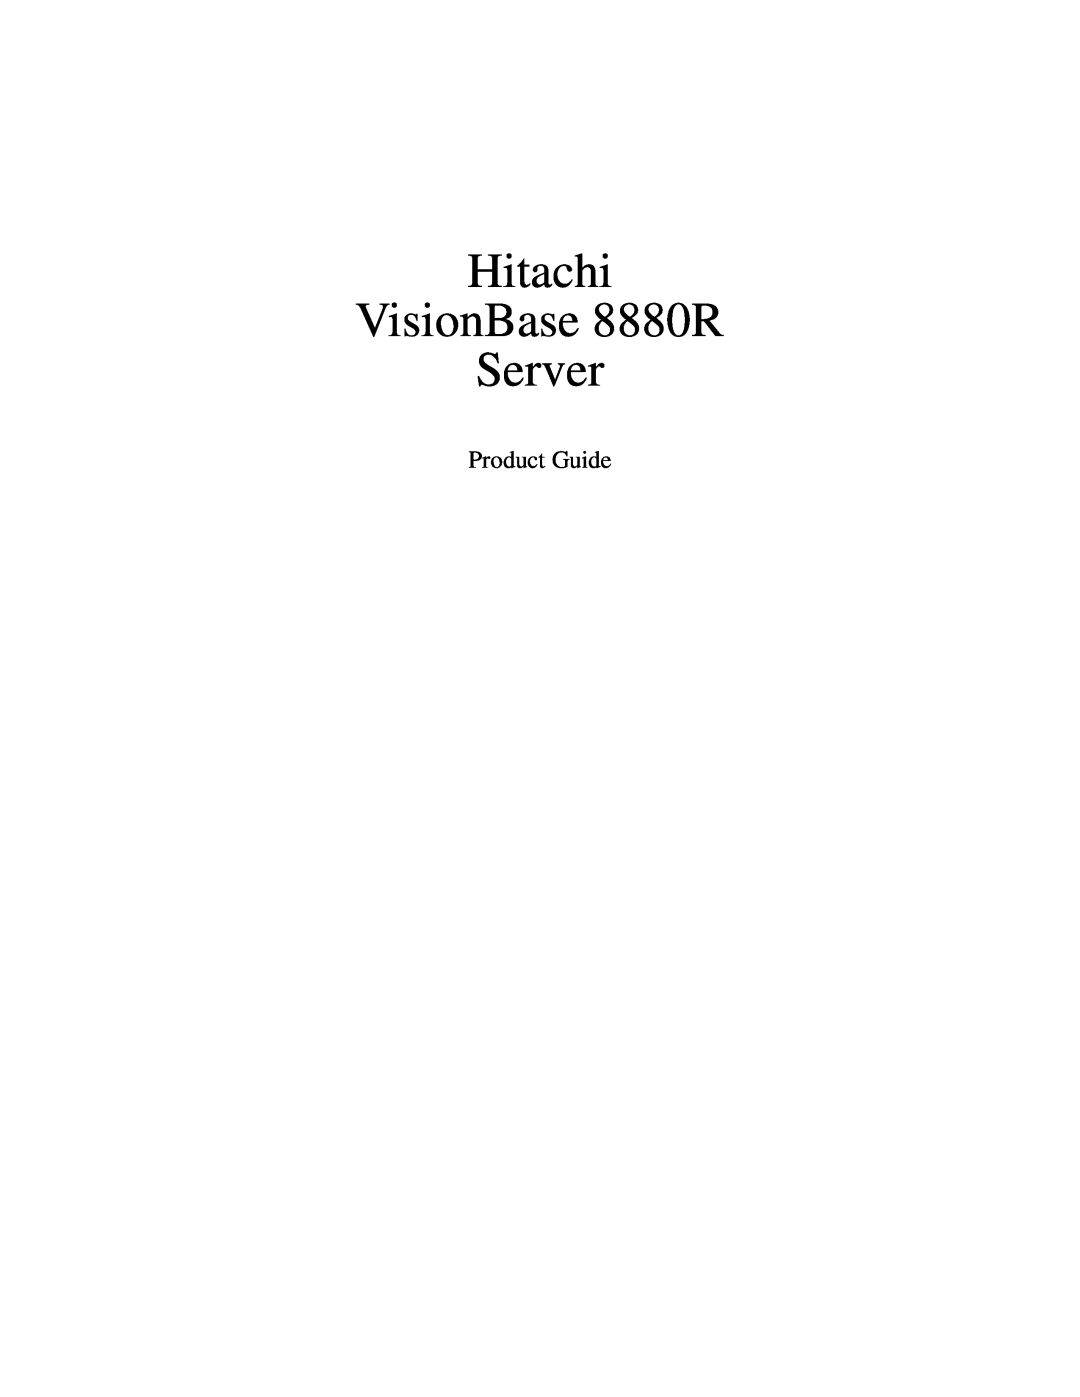 Hitachi manual Hitachi VisionBase 8880R Server, Product Guide 